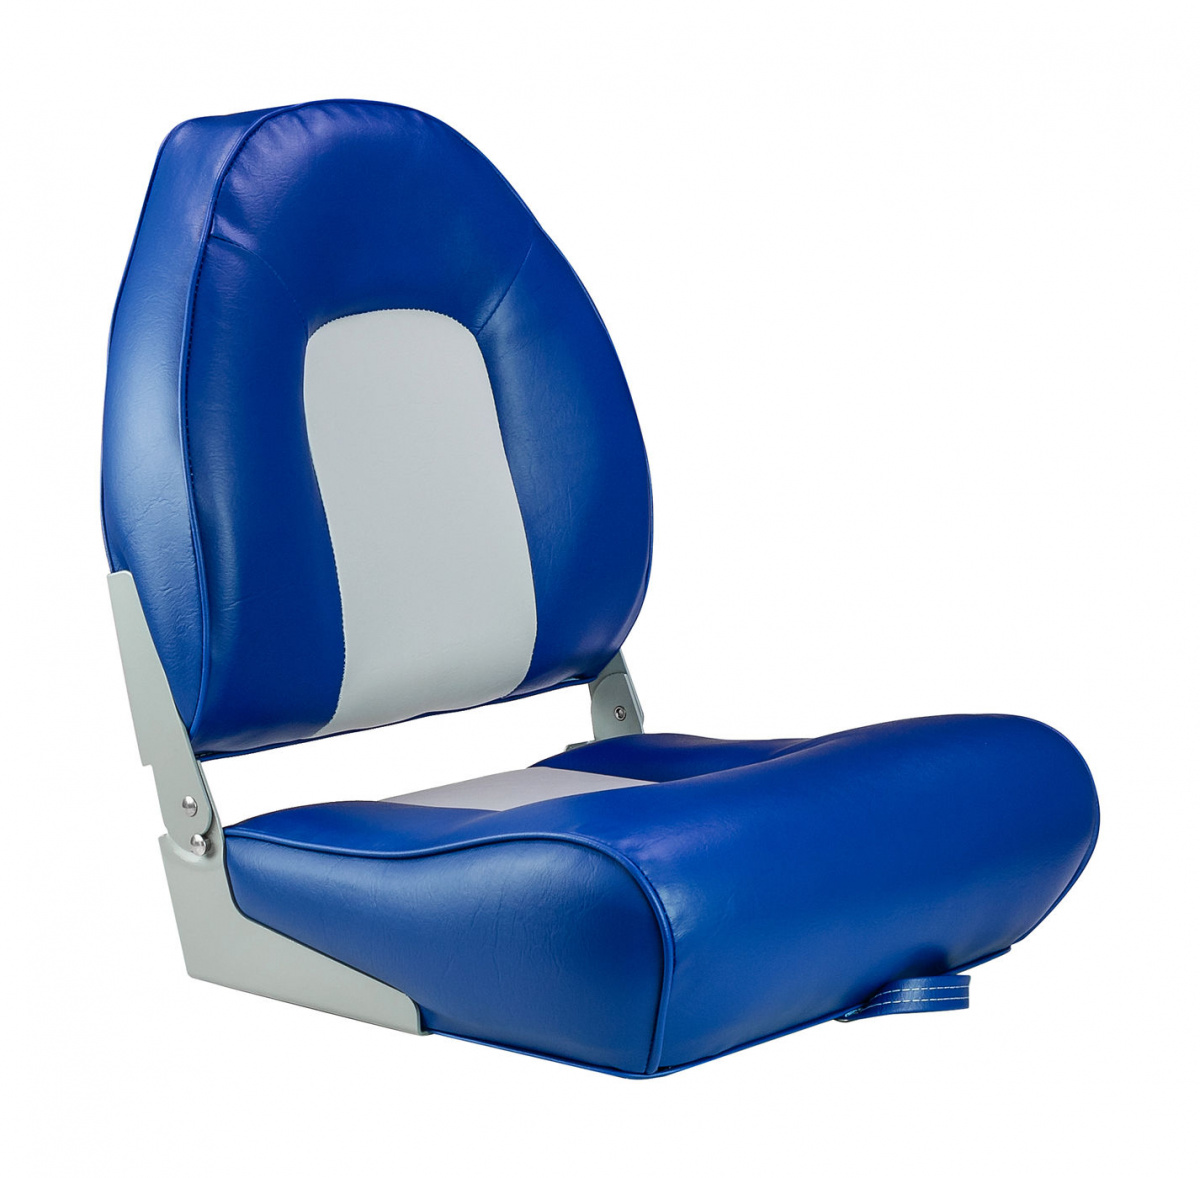 Кресло мягкое складное, обивка винил, цвет синий/серый, Marine Rocket, 889-7720